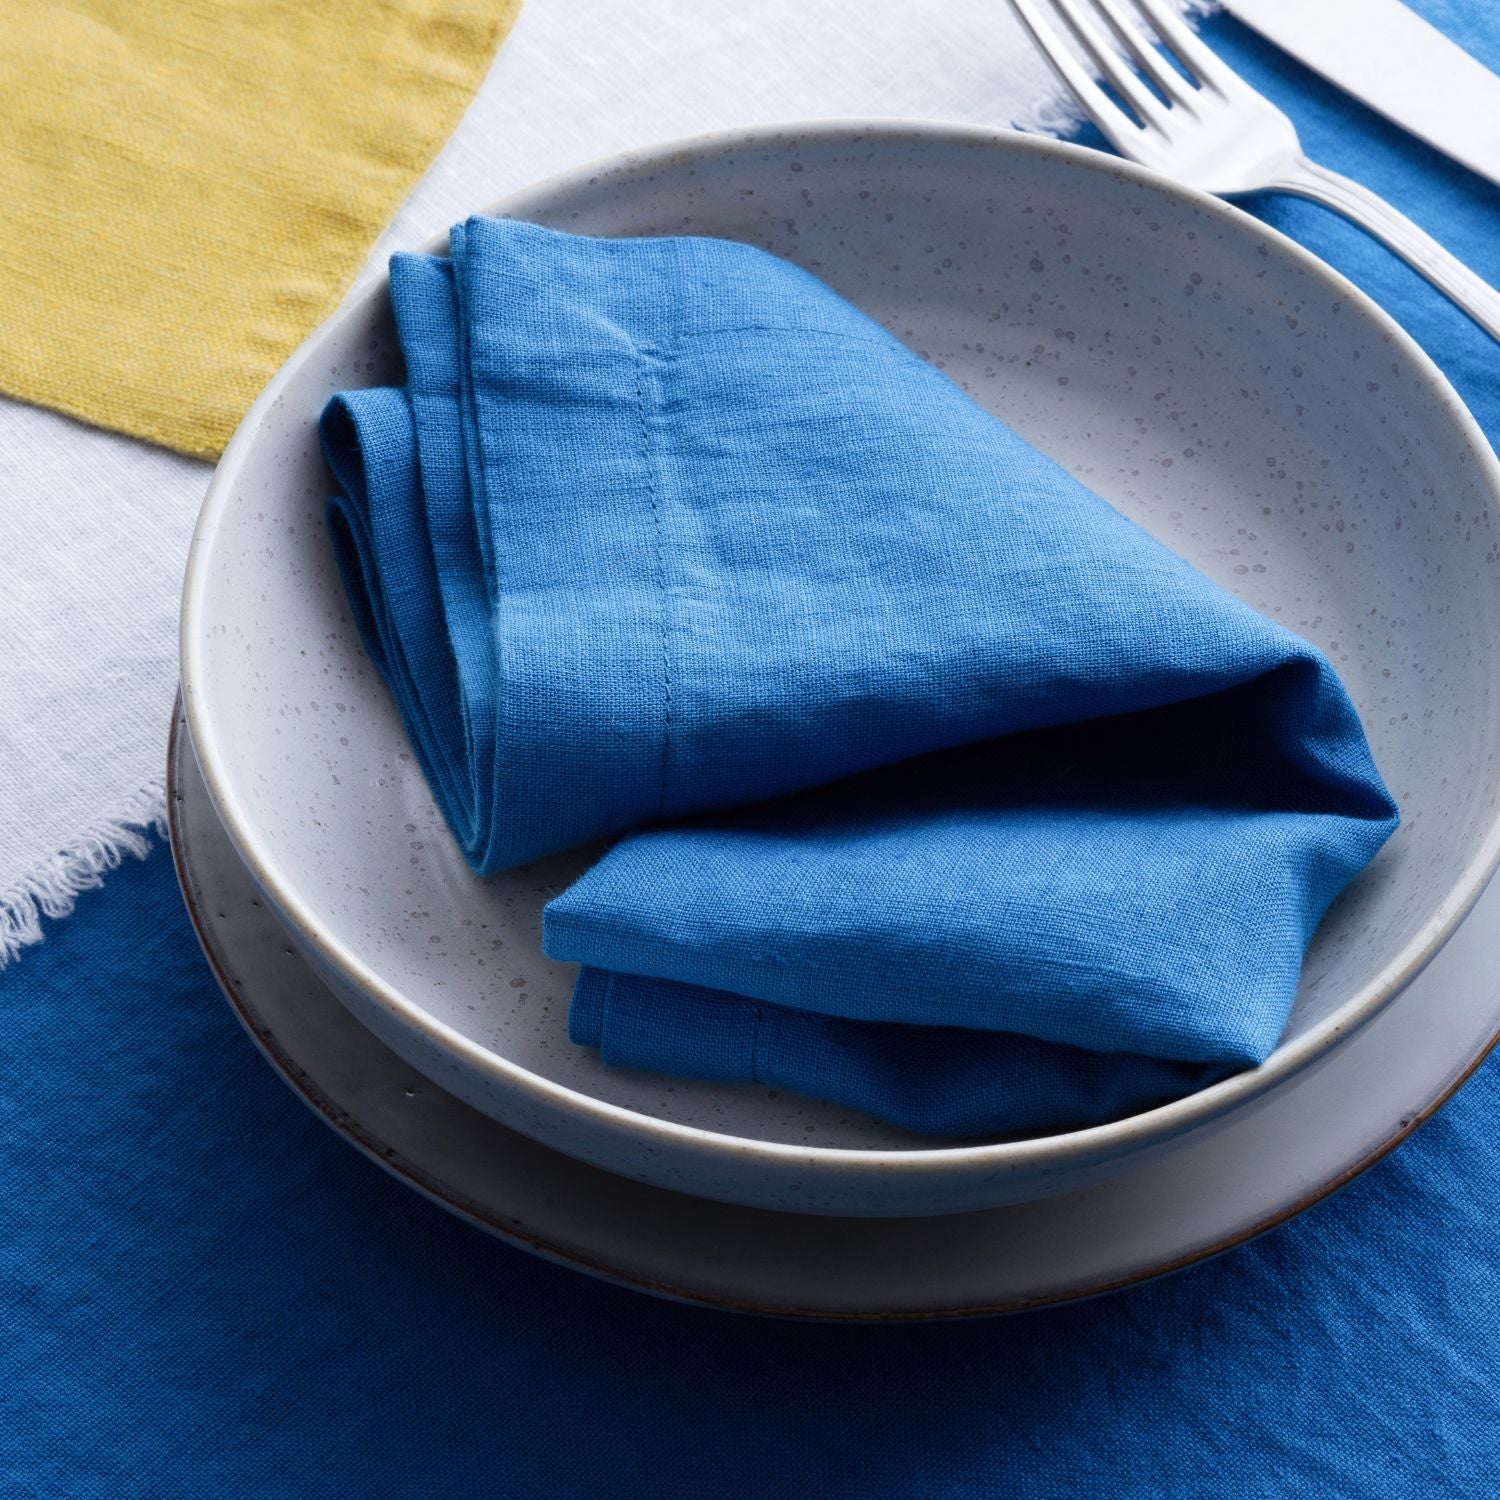 Bird, Dinner napkins, Sage green, Blue